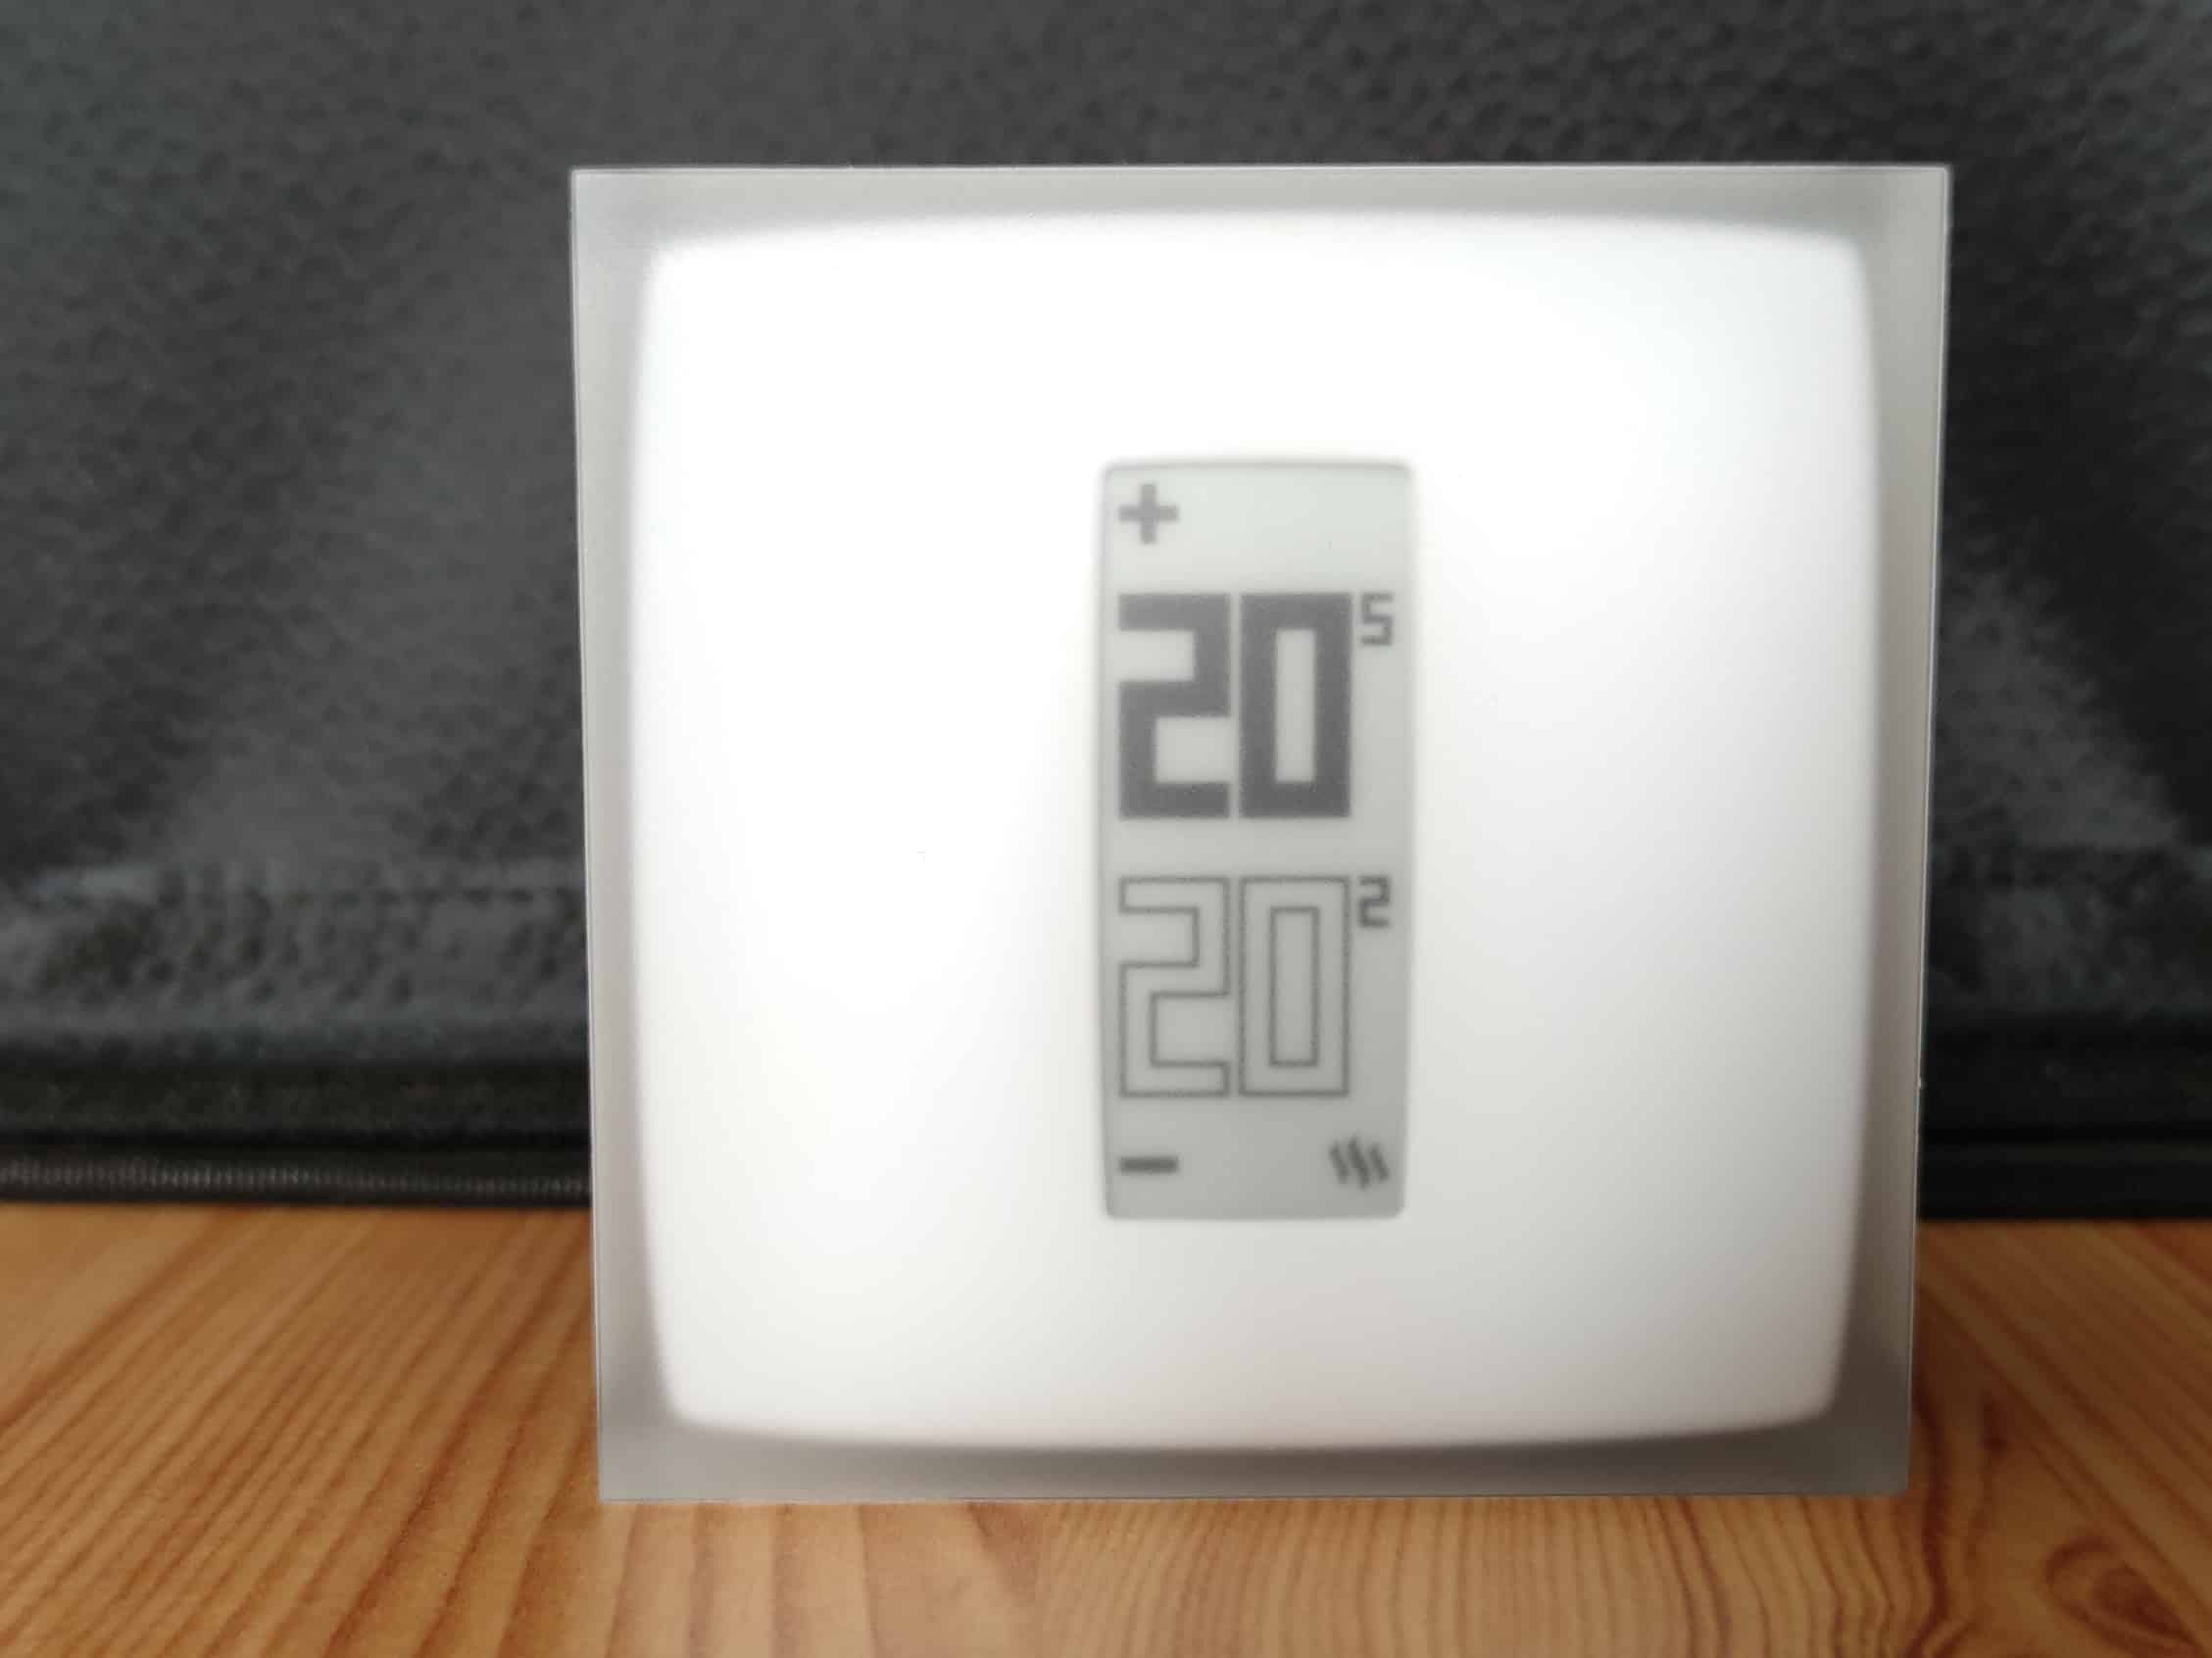 Test du thermostat modulant Netatmo, notre avis d'utilisateurs